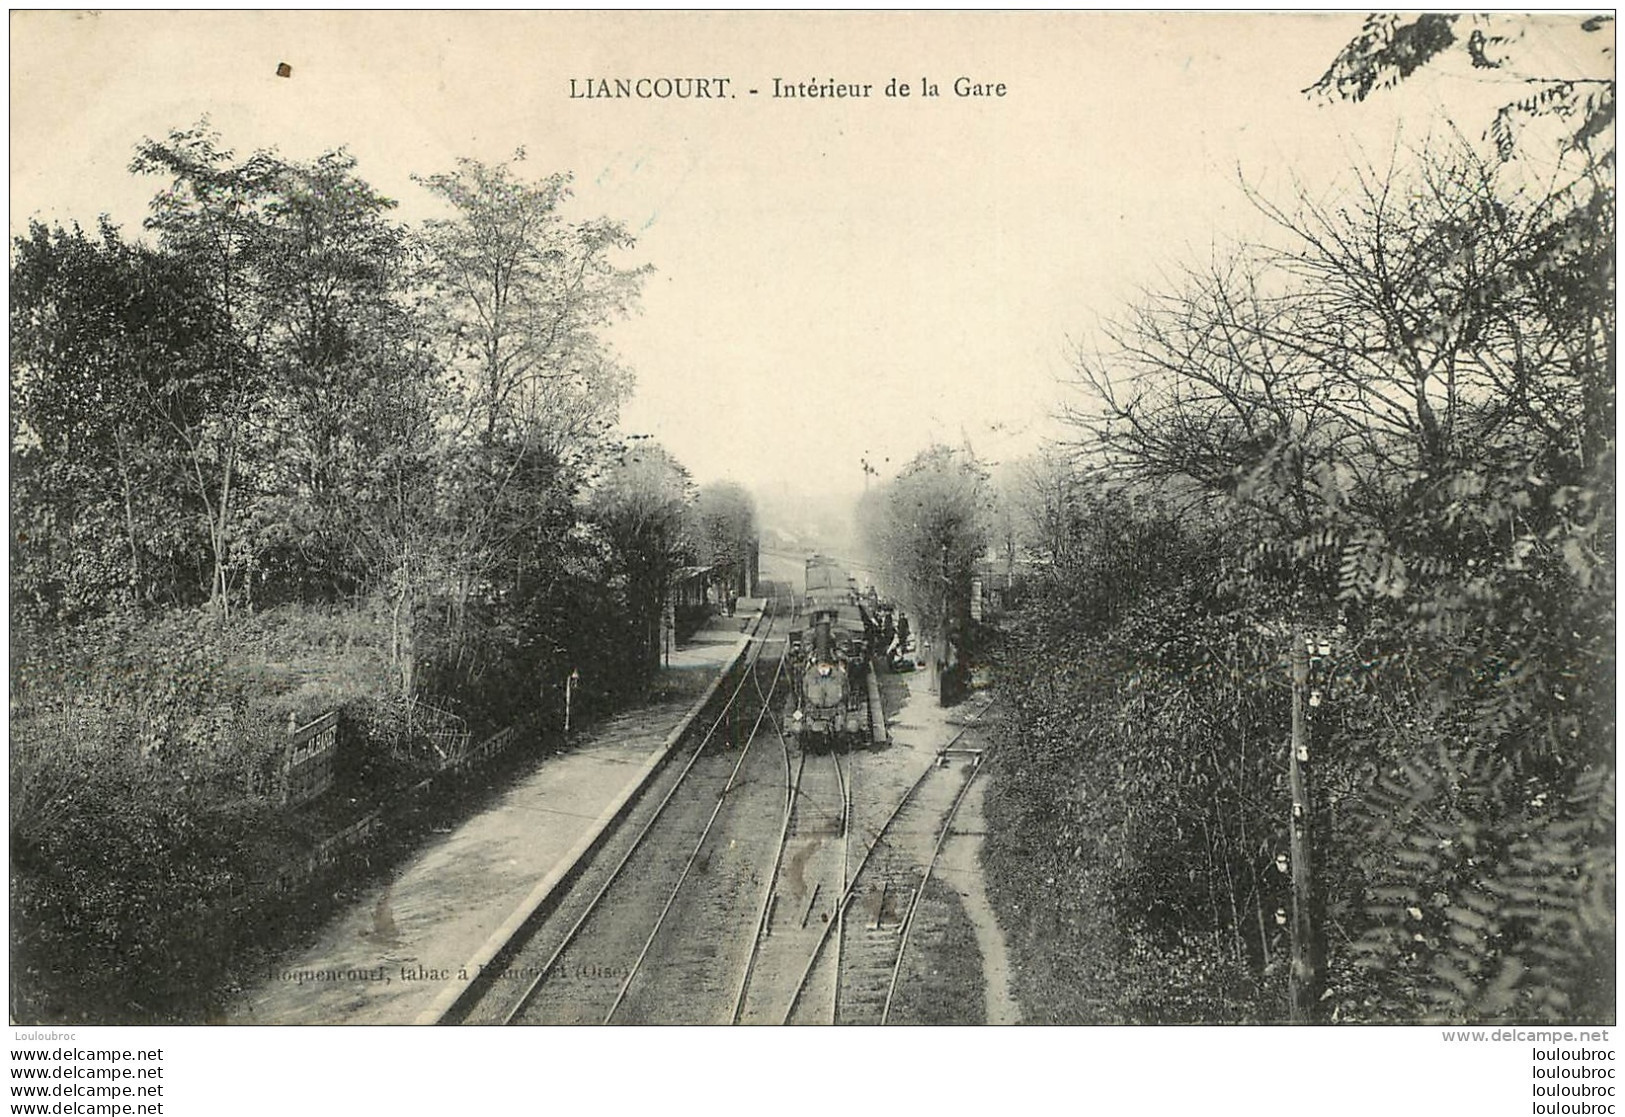 LIANCOURT INTERIEUR DE LA GARE - Liancourt